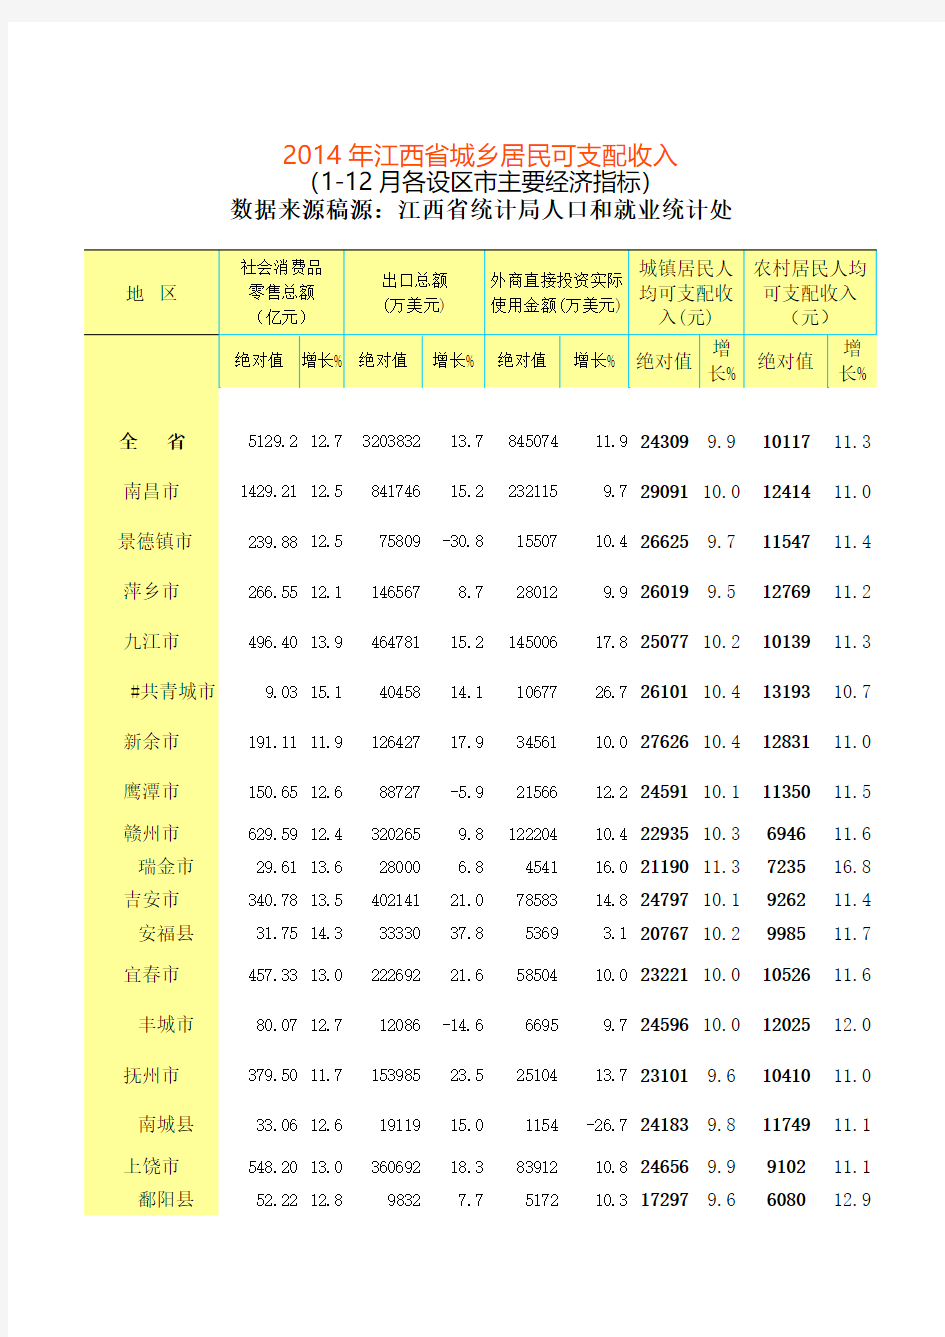 2015年江西省交通事故赔偿标准数据及计算方法